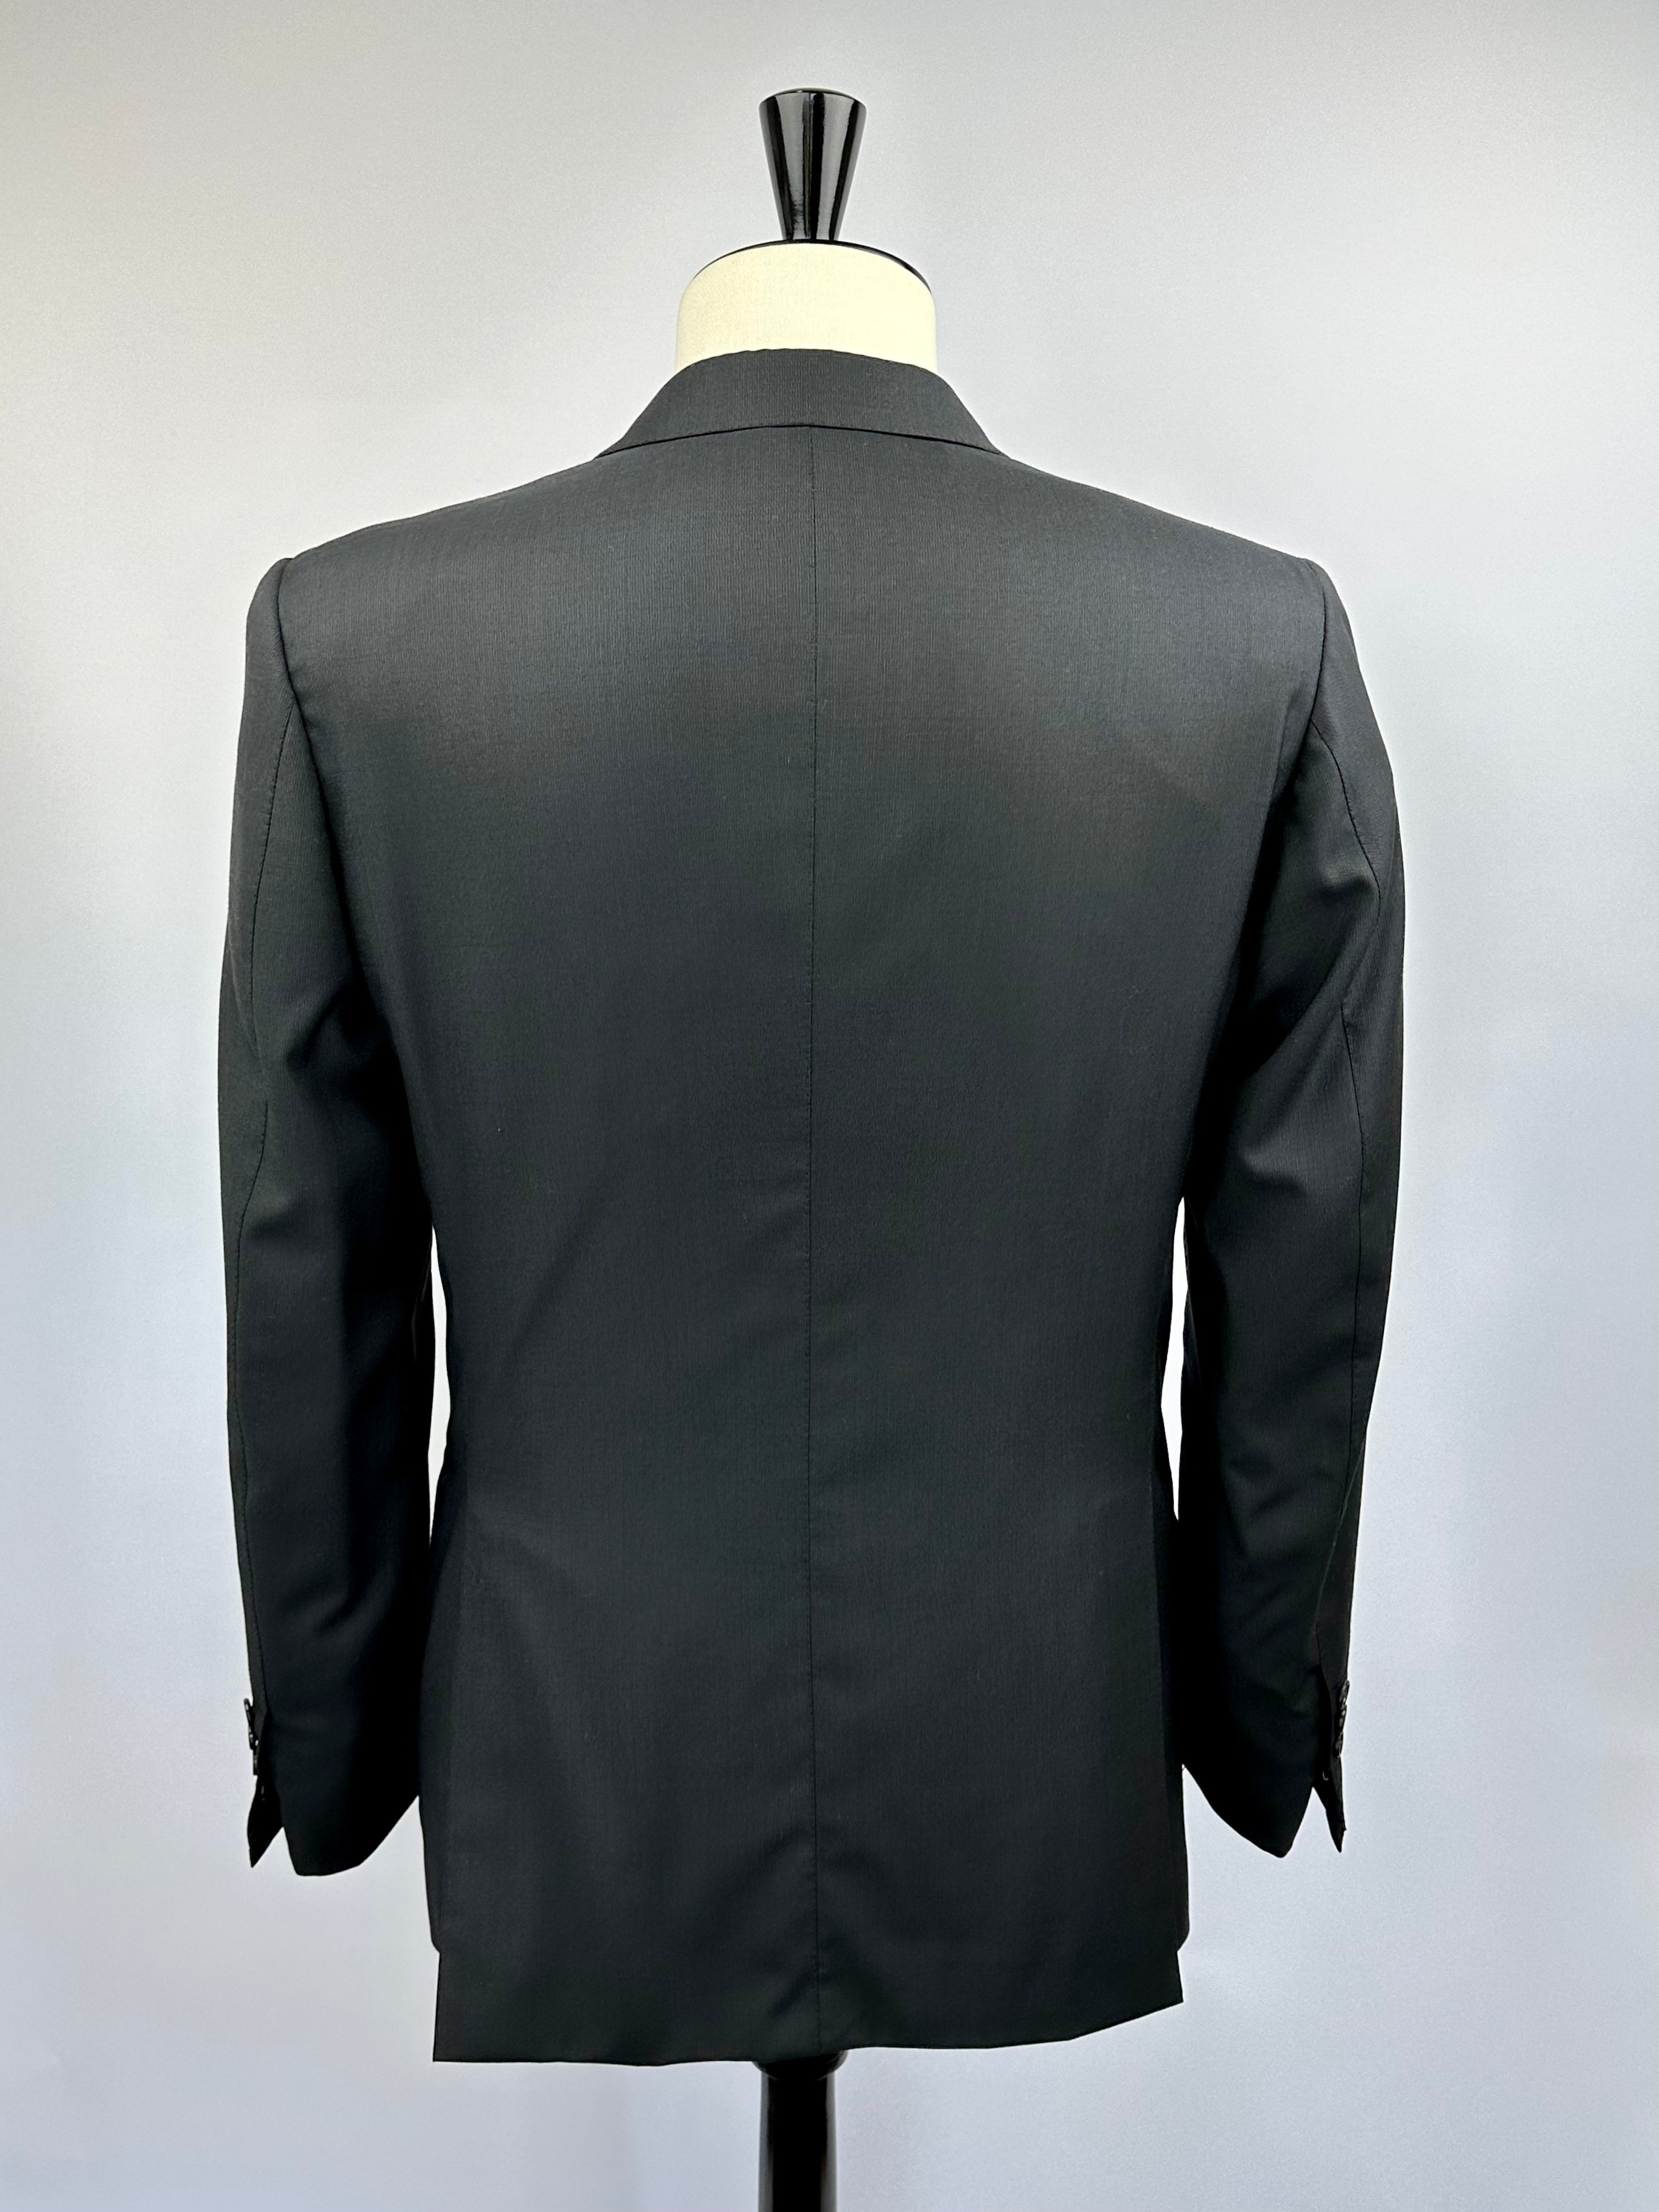 Brioni Black Barrathea Suit